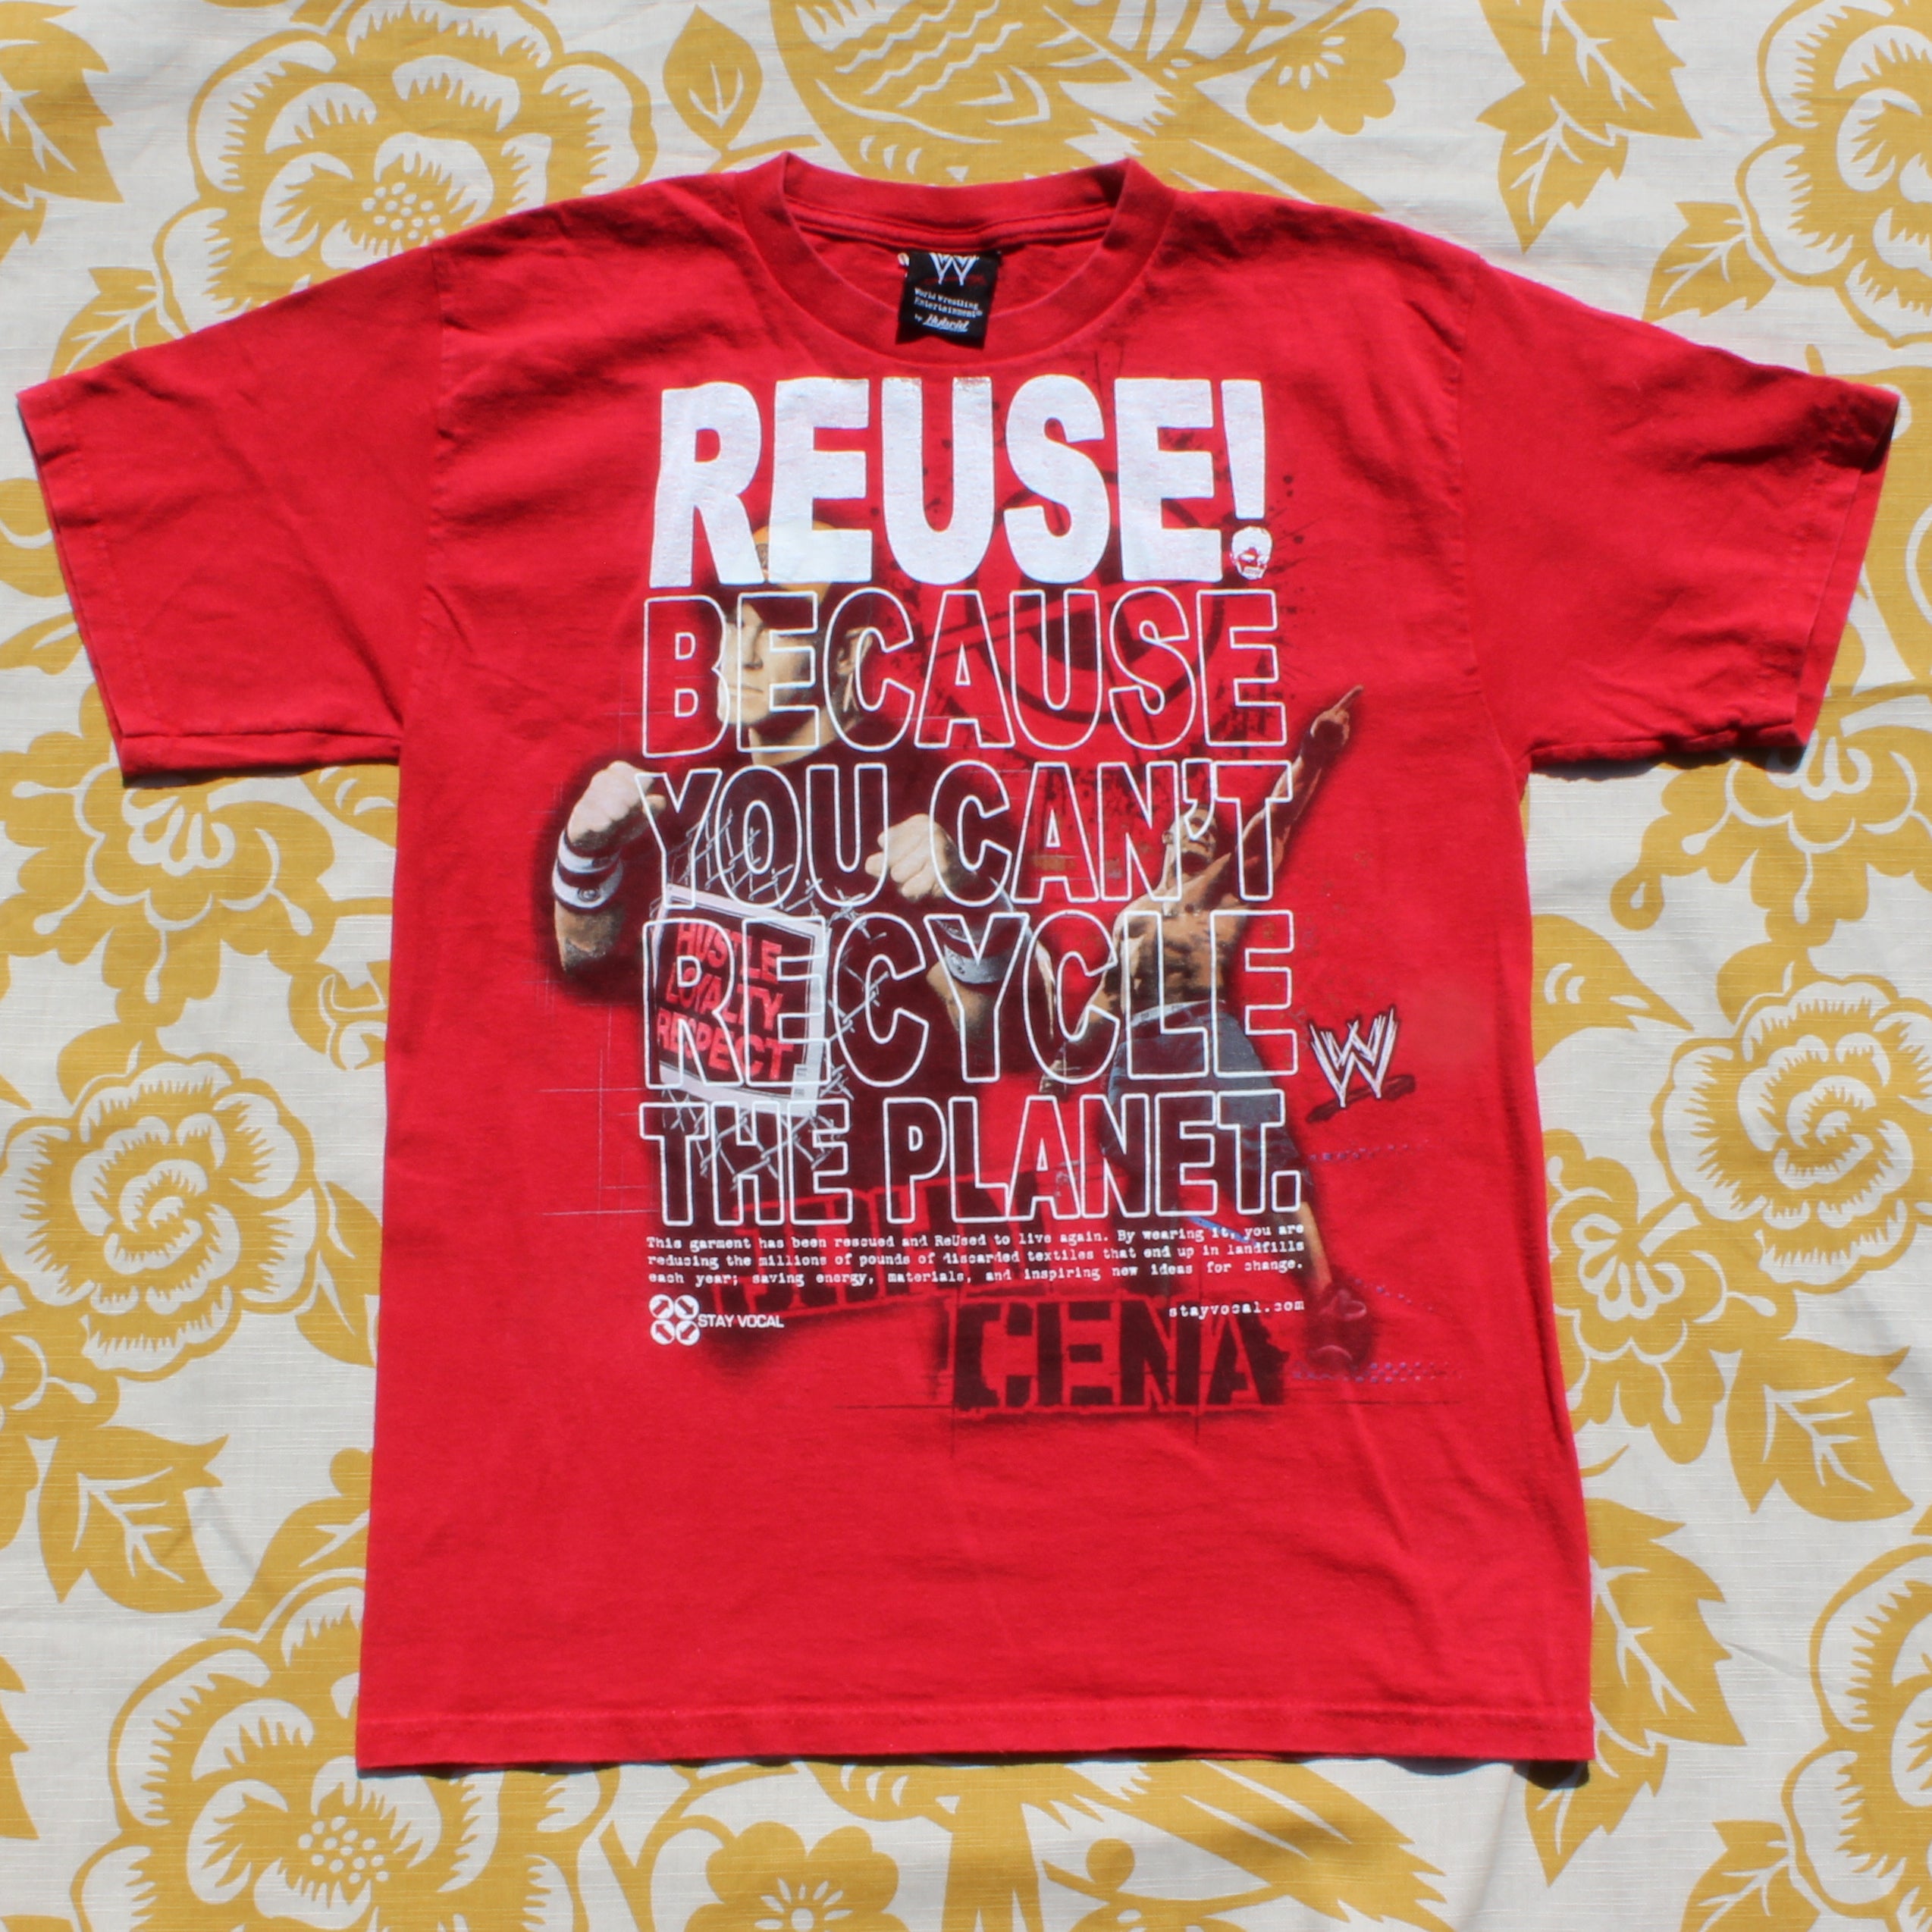 One of a Kind (Kid's L) REUSE! John Cena Wrestling T-Shirt